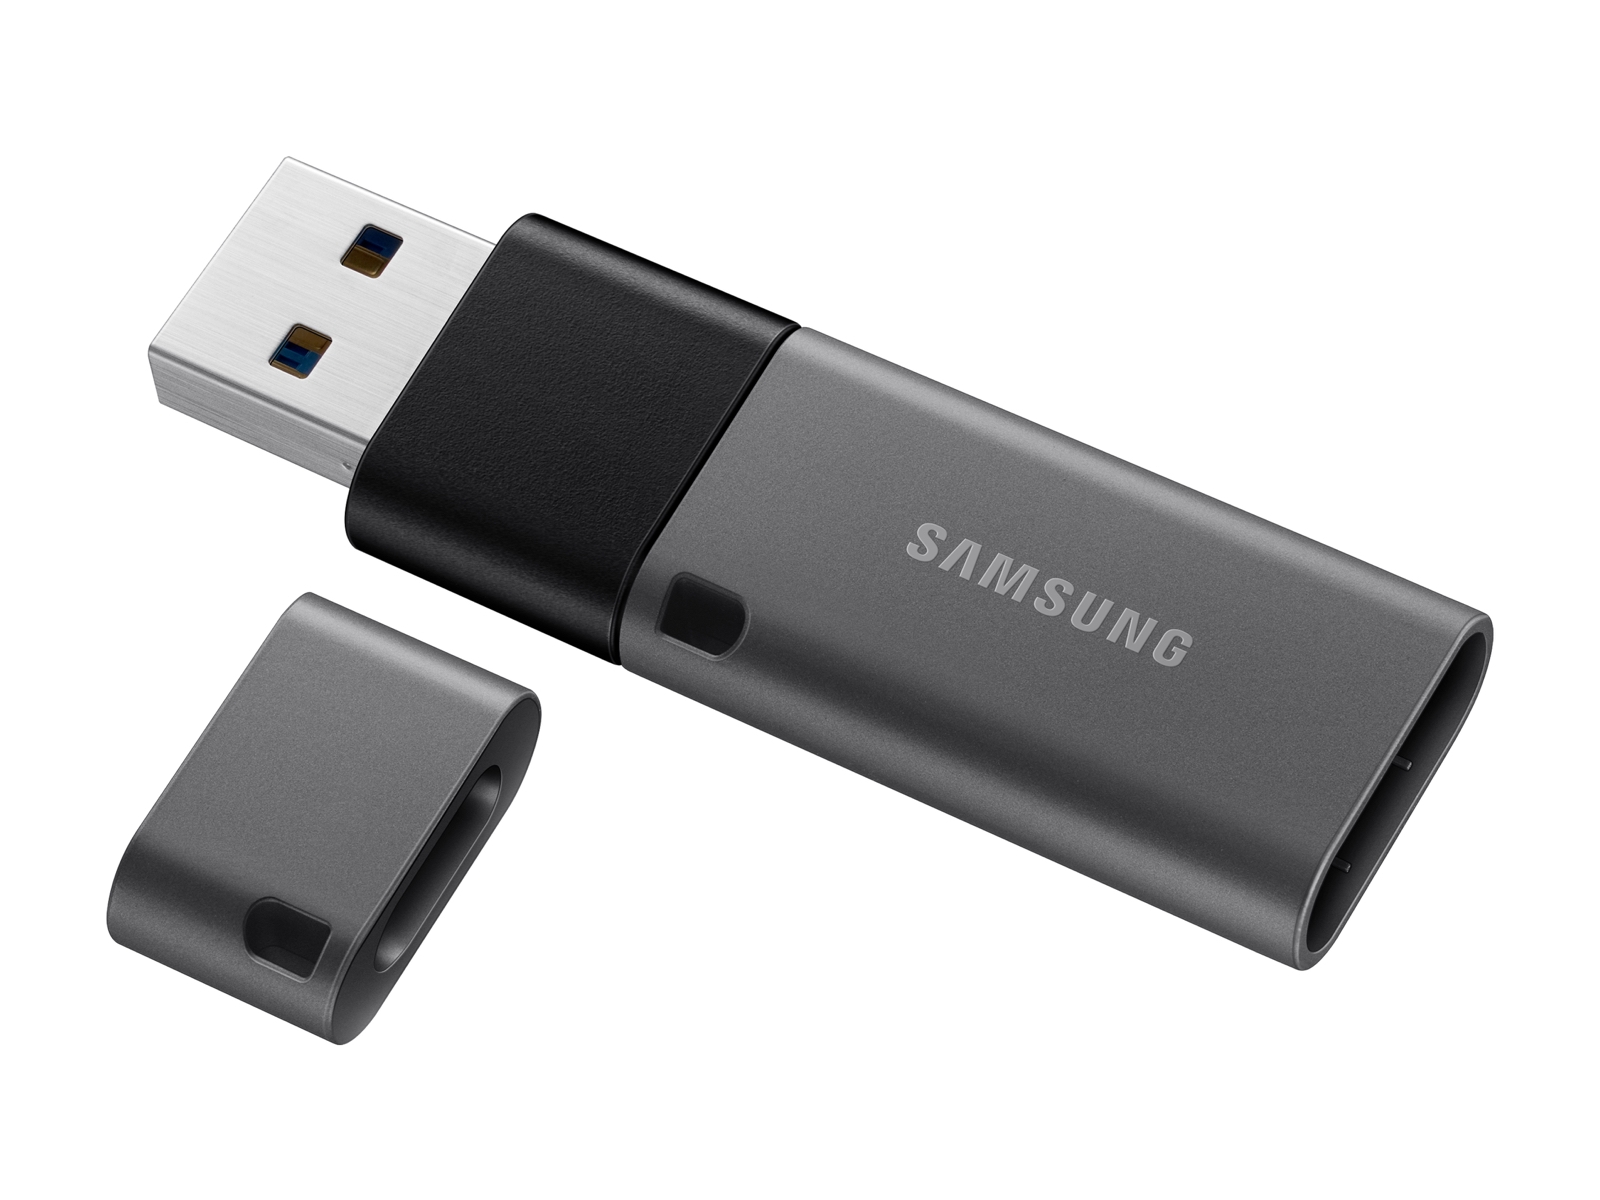 USB Type-C™ Flash Drive 64GB (MUF-64DA/AM) - MUF-64DA/AM